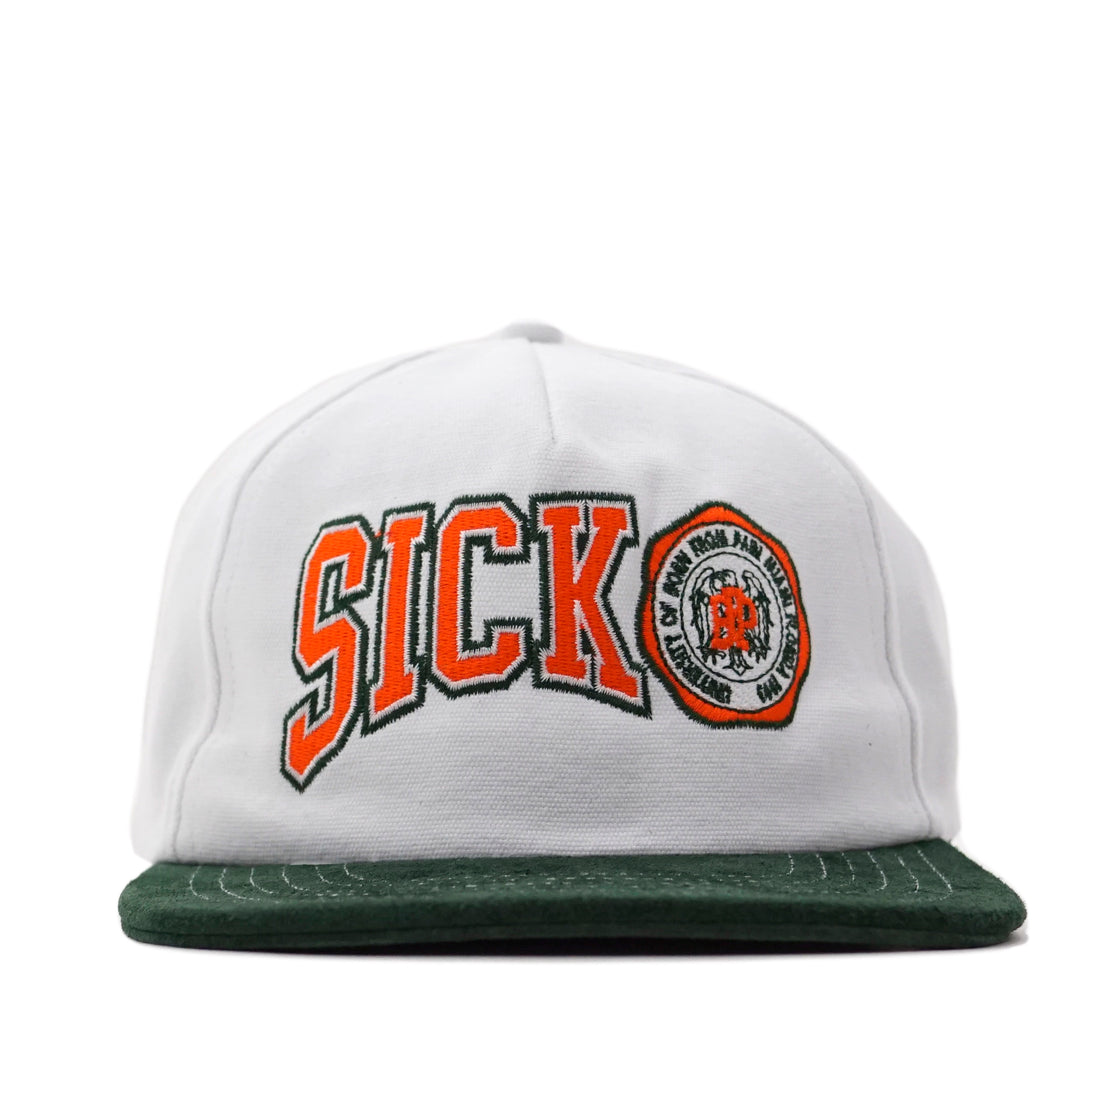 Sicko Miami University Hat - White